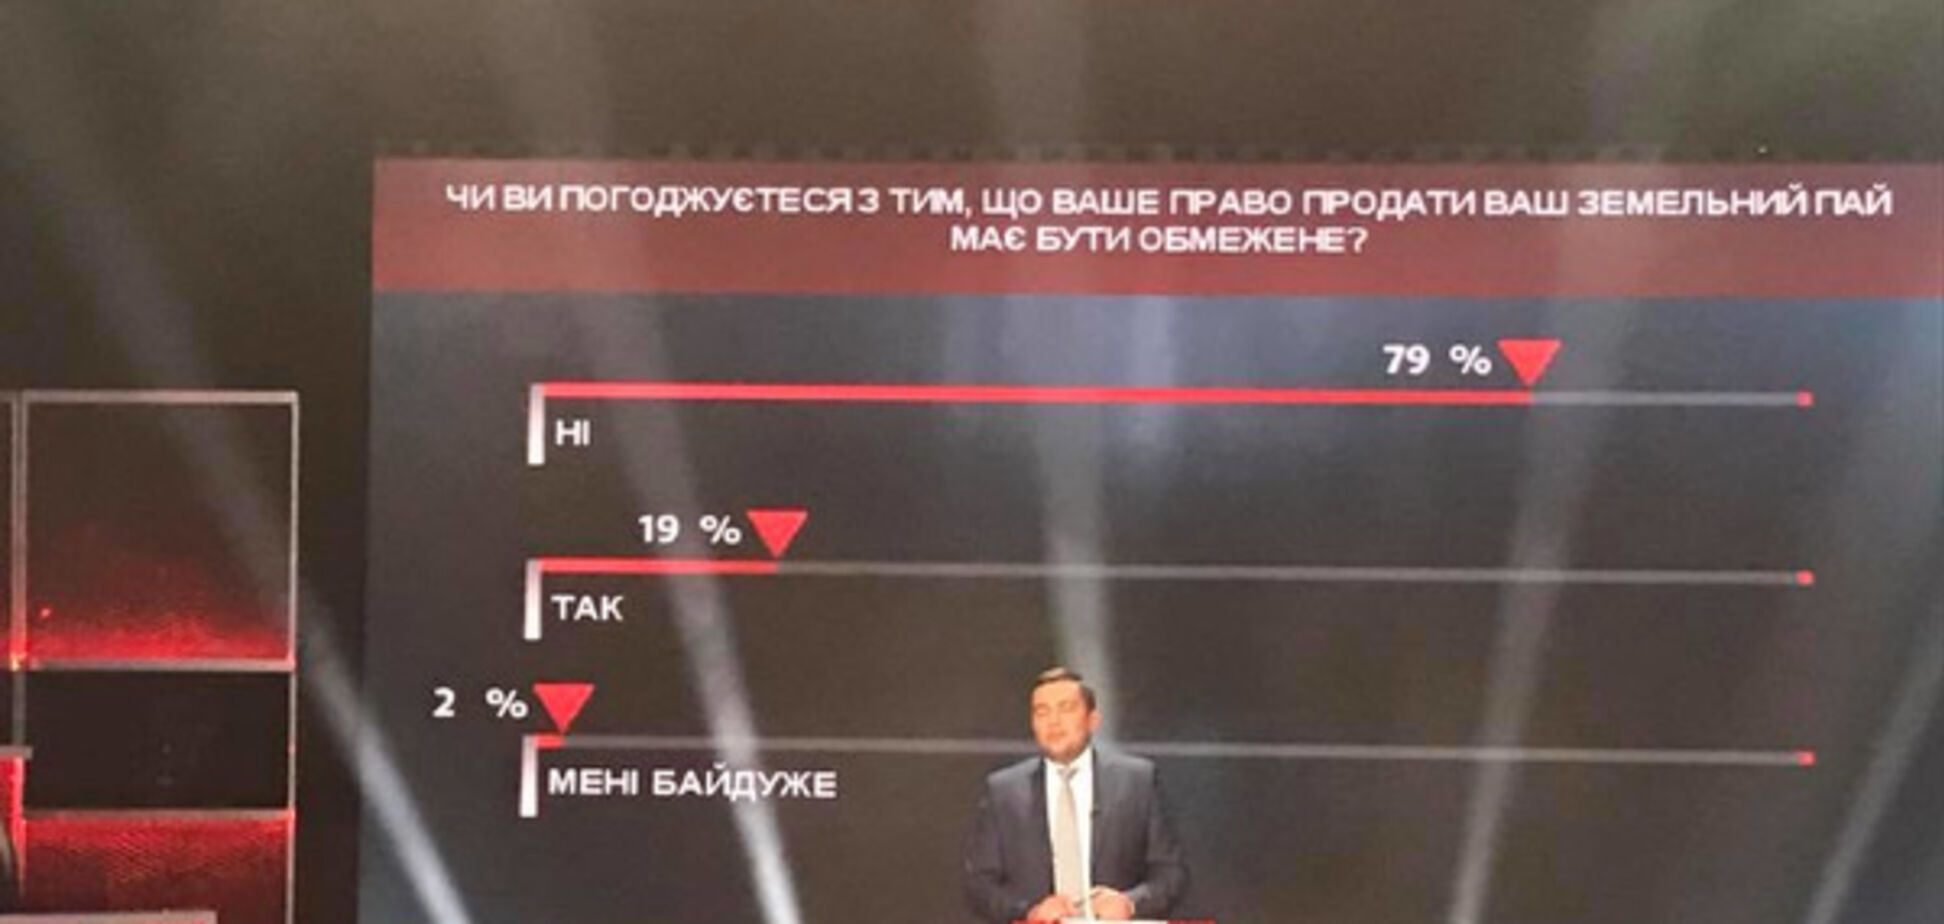 Проти обмеження права продавати свої паї виступають 79% українців